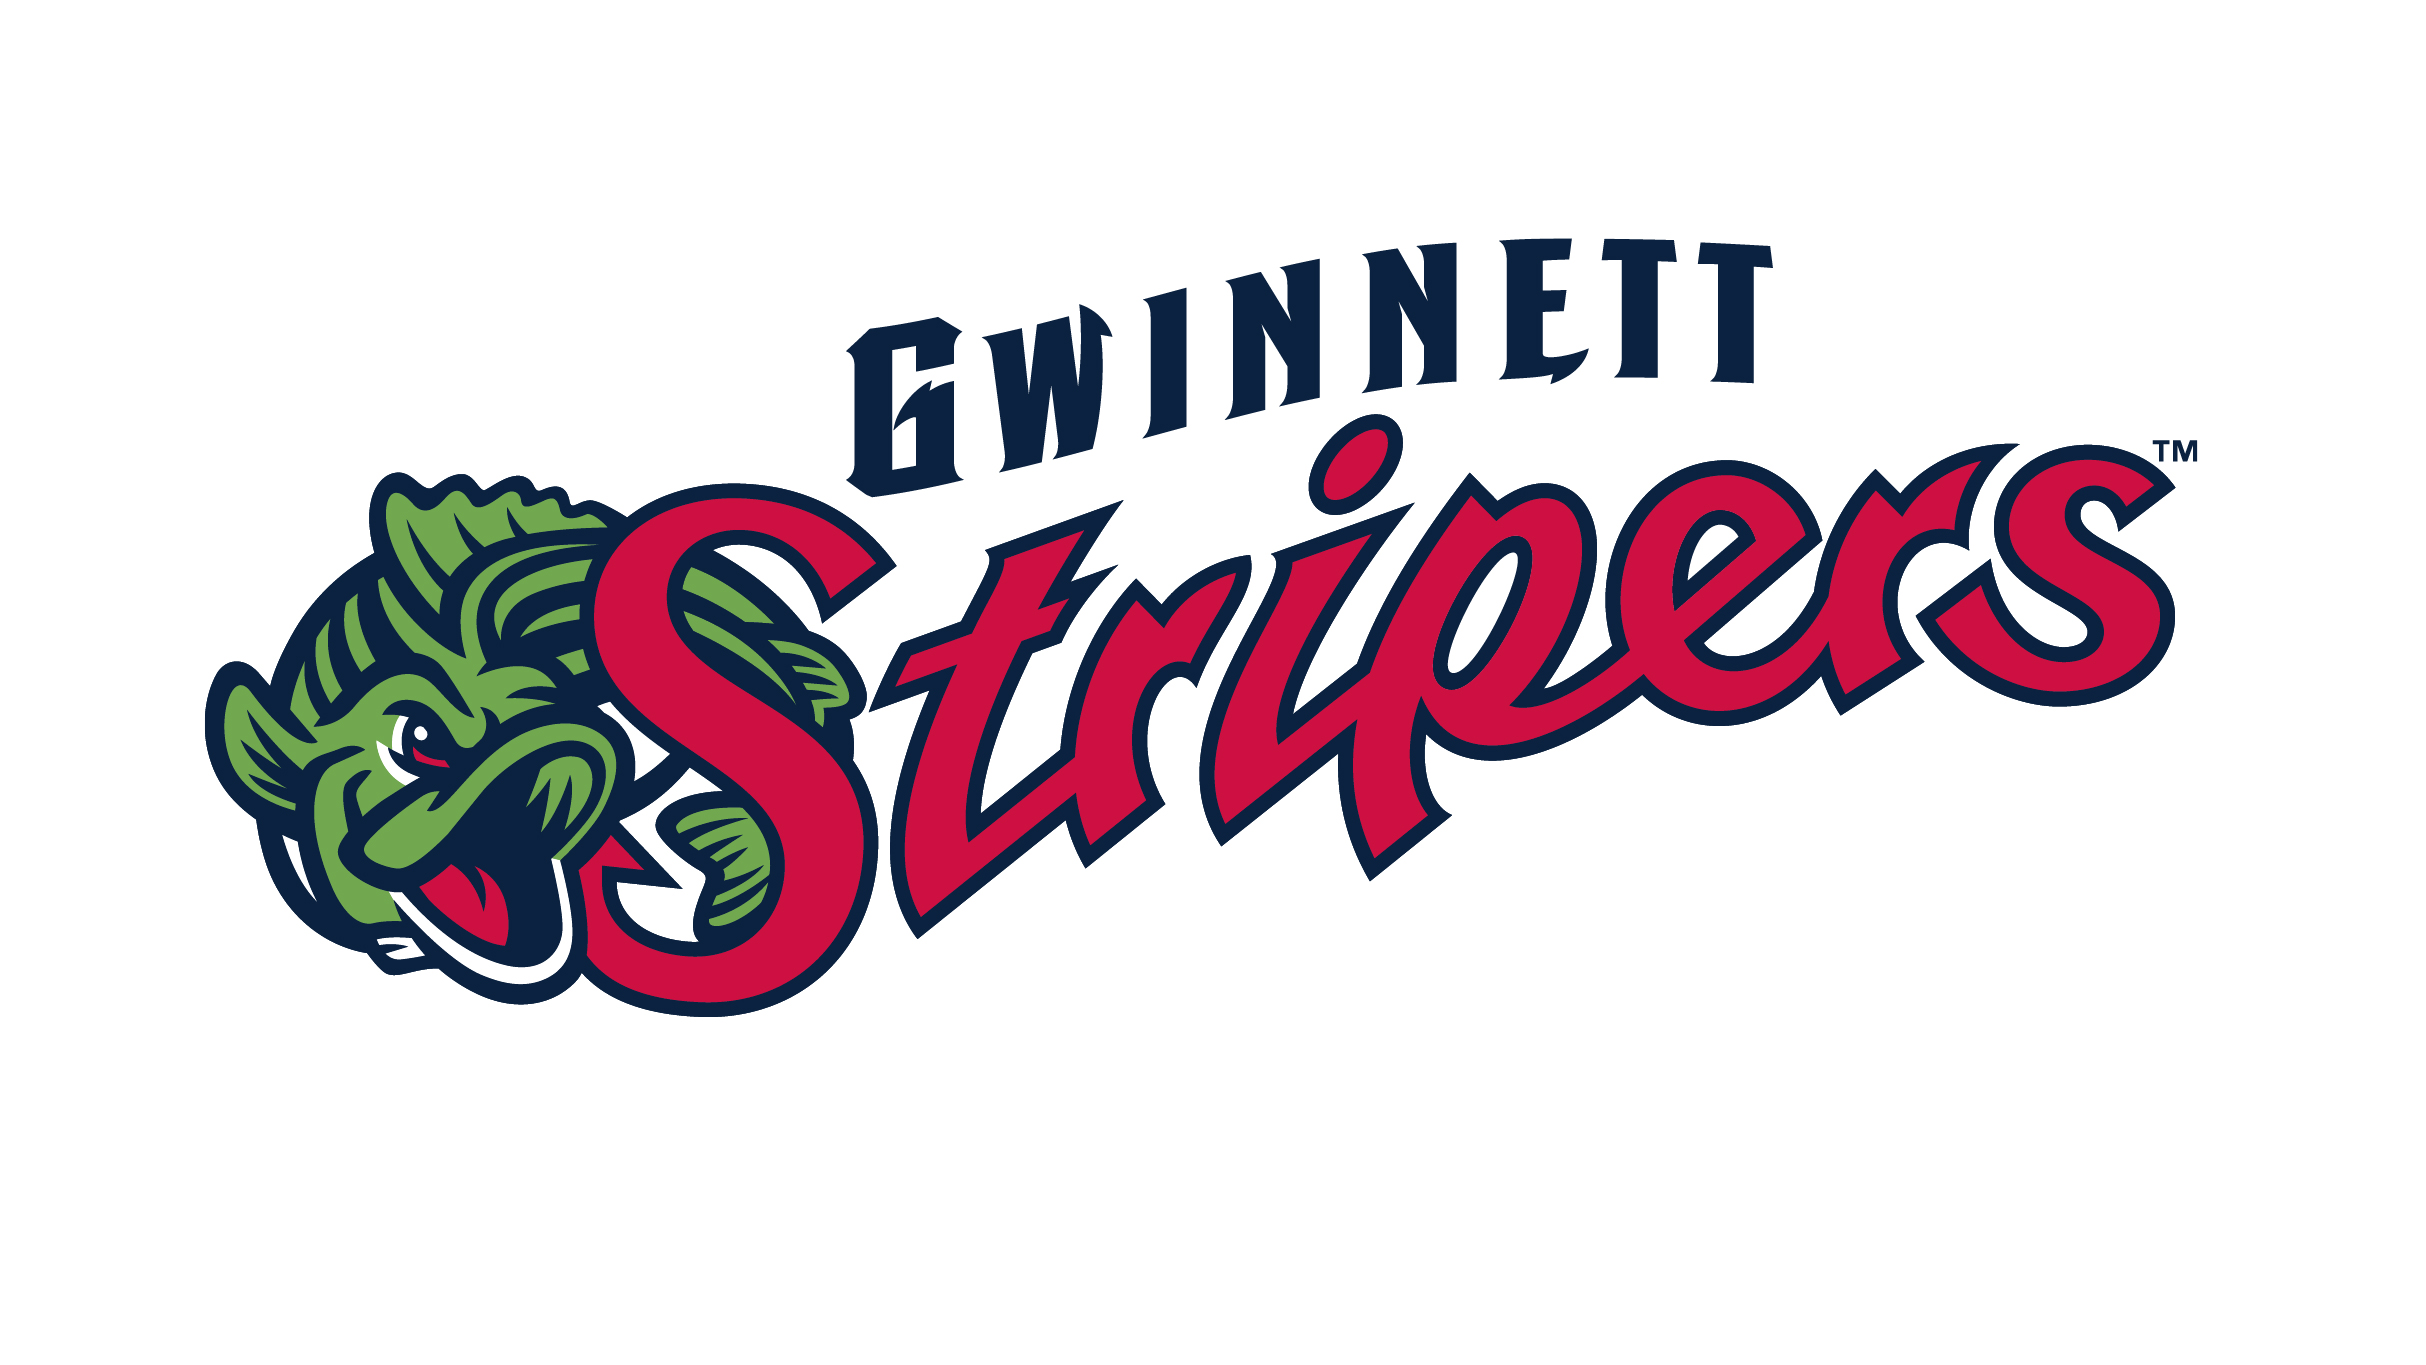 Gwinnett Stripers vs. Nashville Sounds